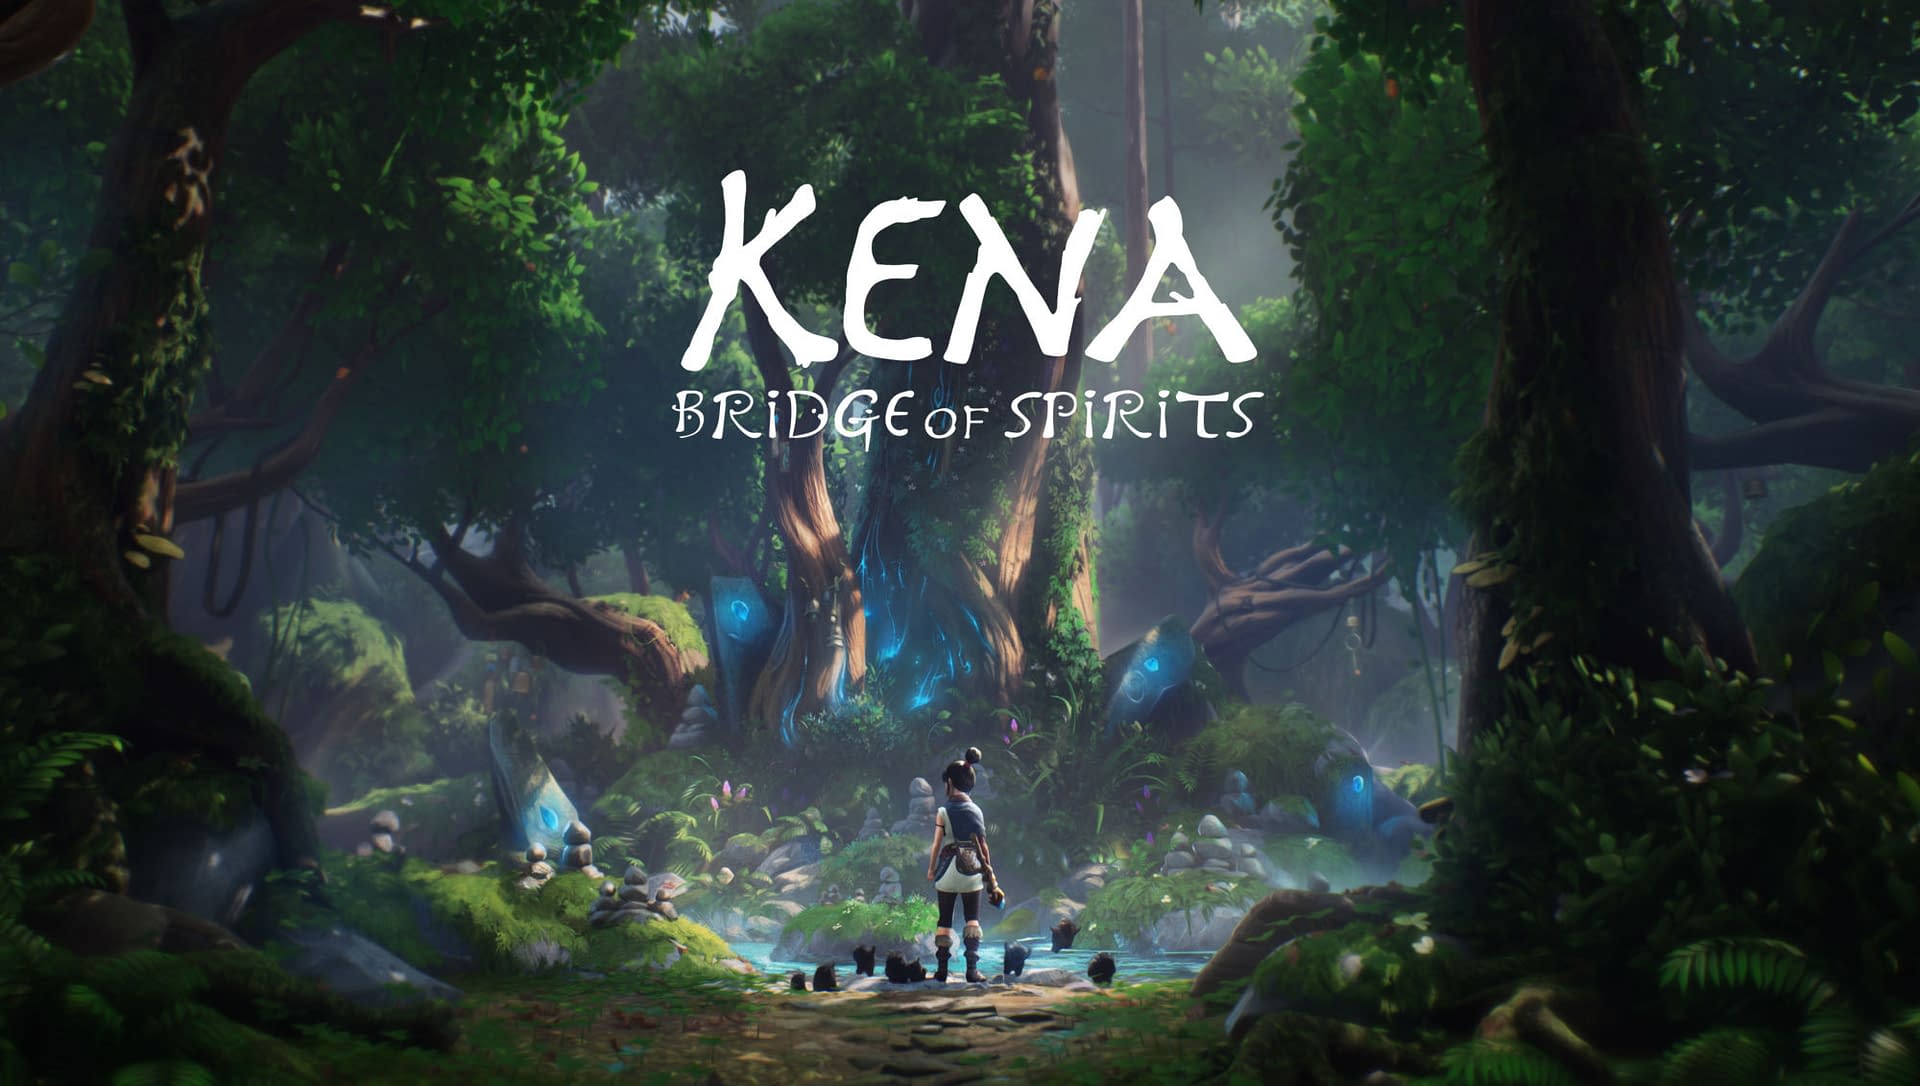 kena bridge of spirits reddit download free